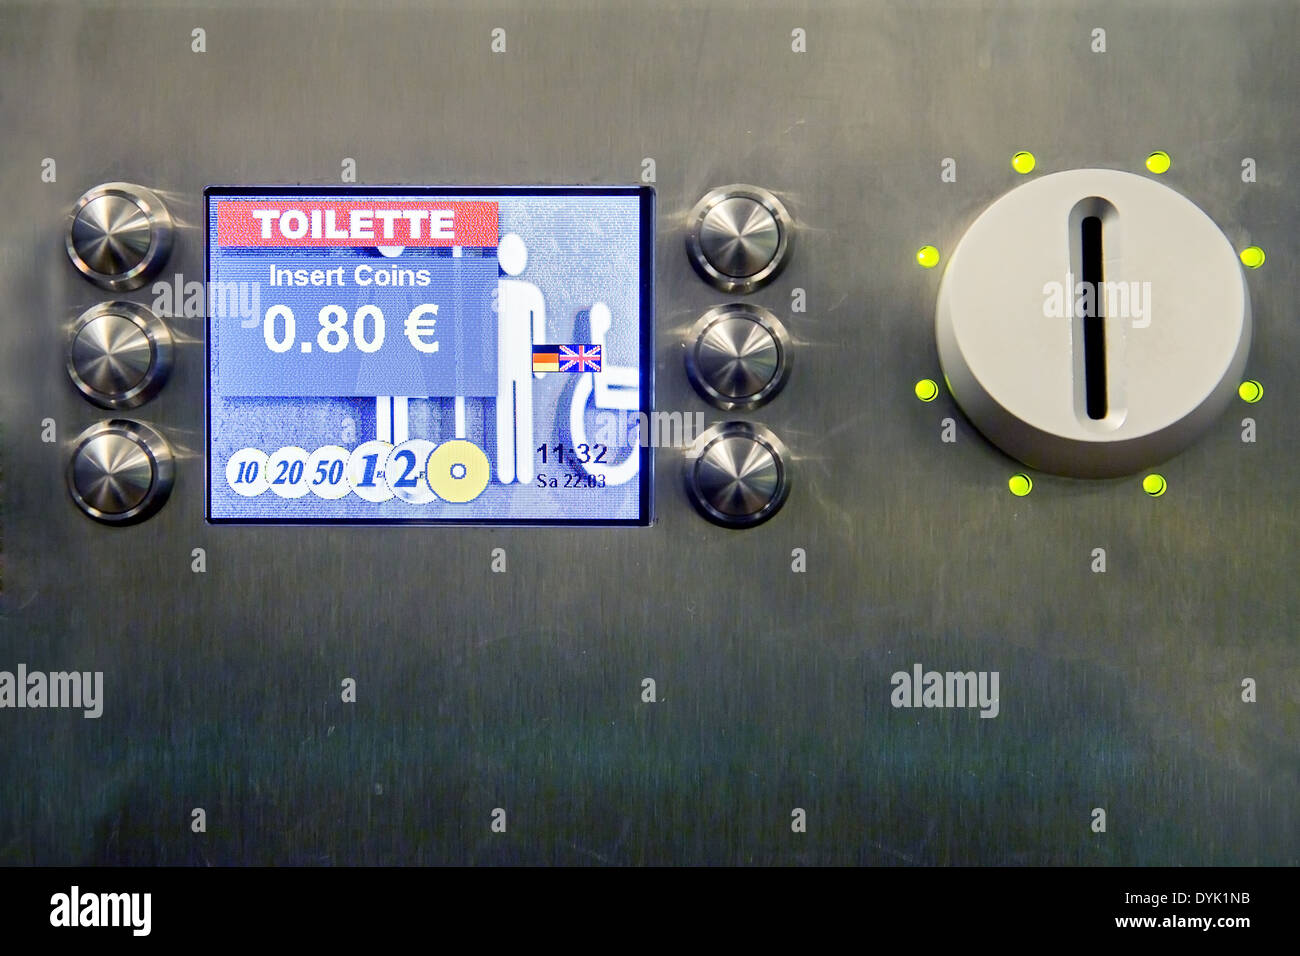 Gebühr auf der Toilette - Selbstbedienung automatisieren Stockfoto